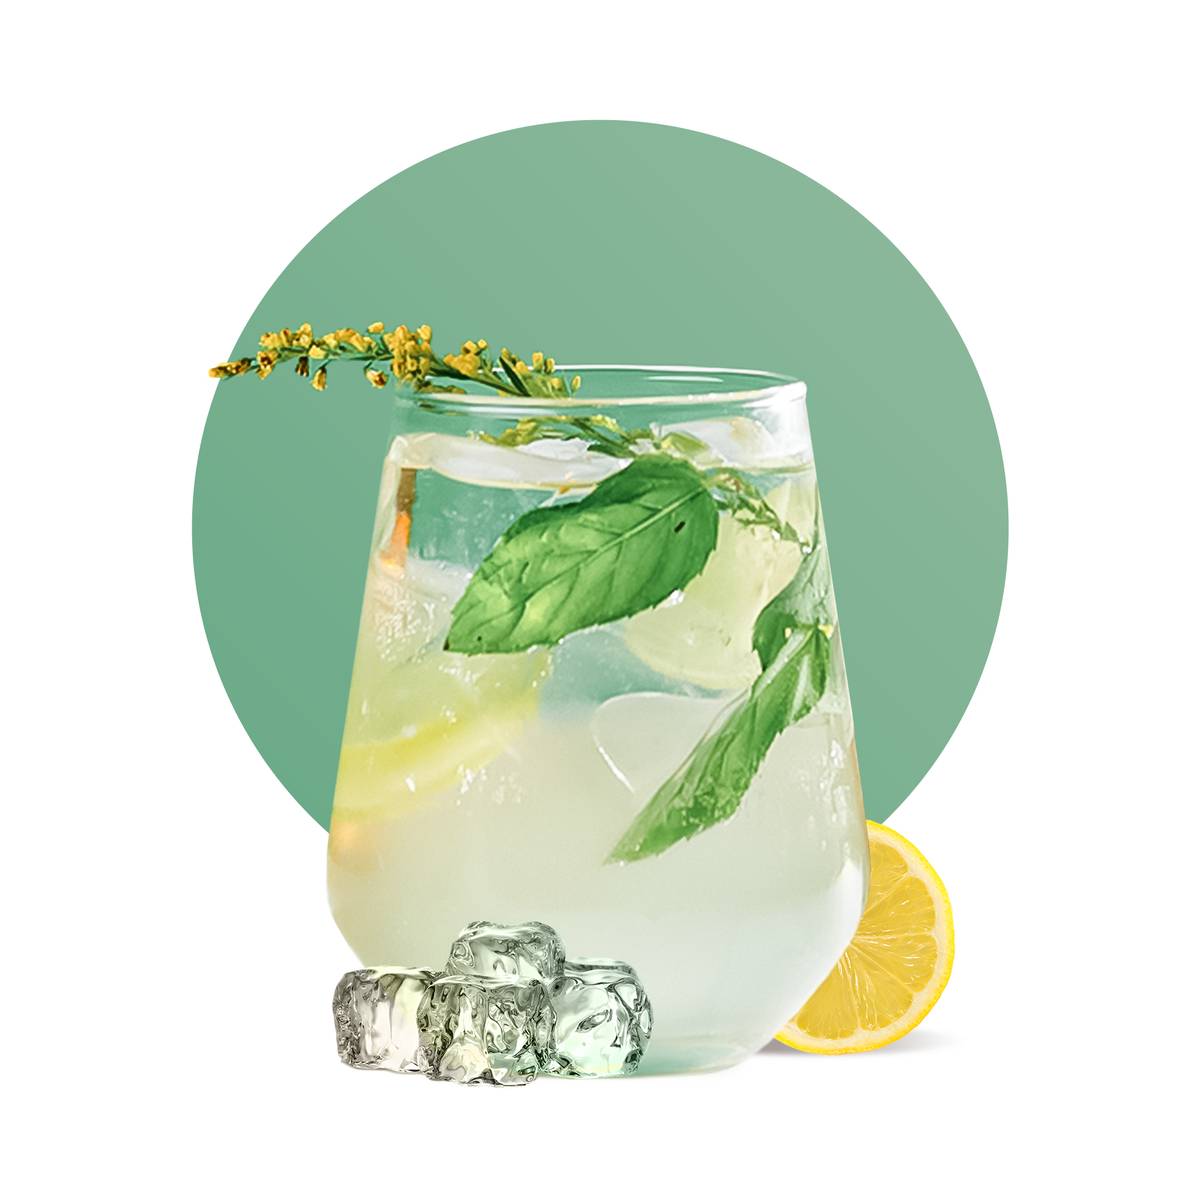 Elderflower Lemonade Sparkler Drink Recipe